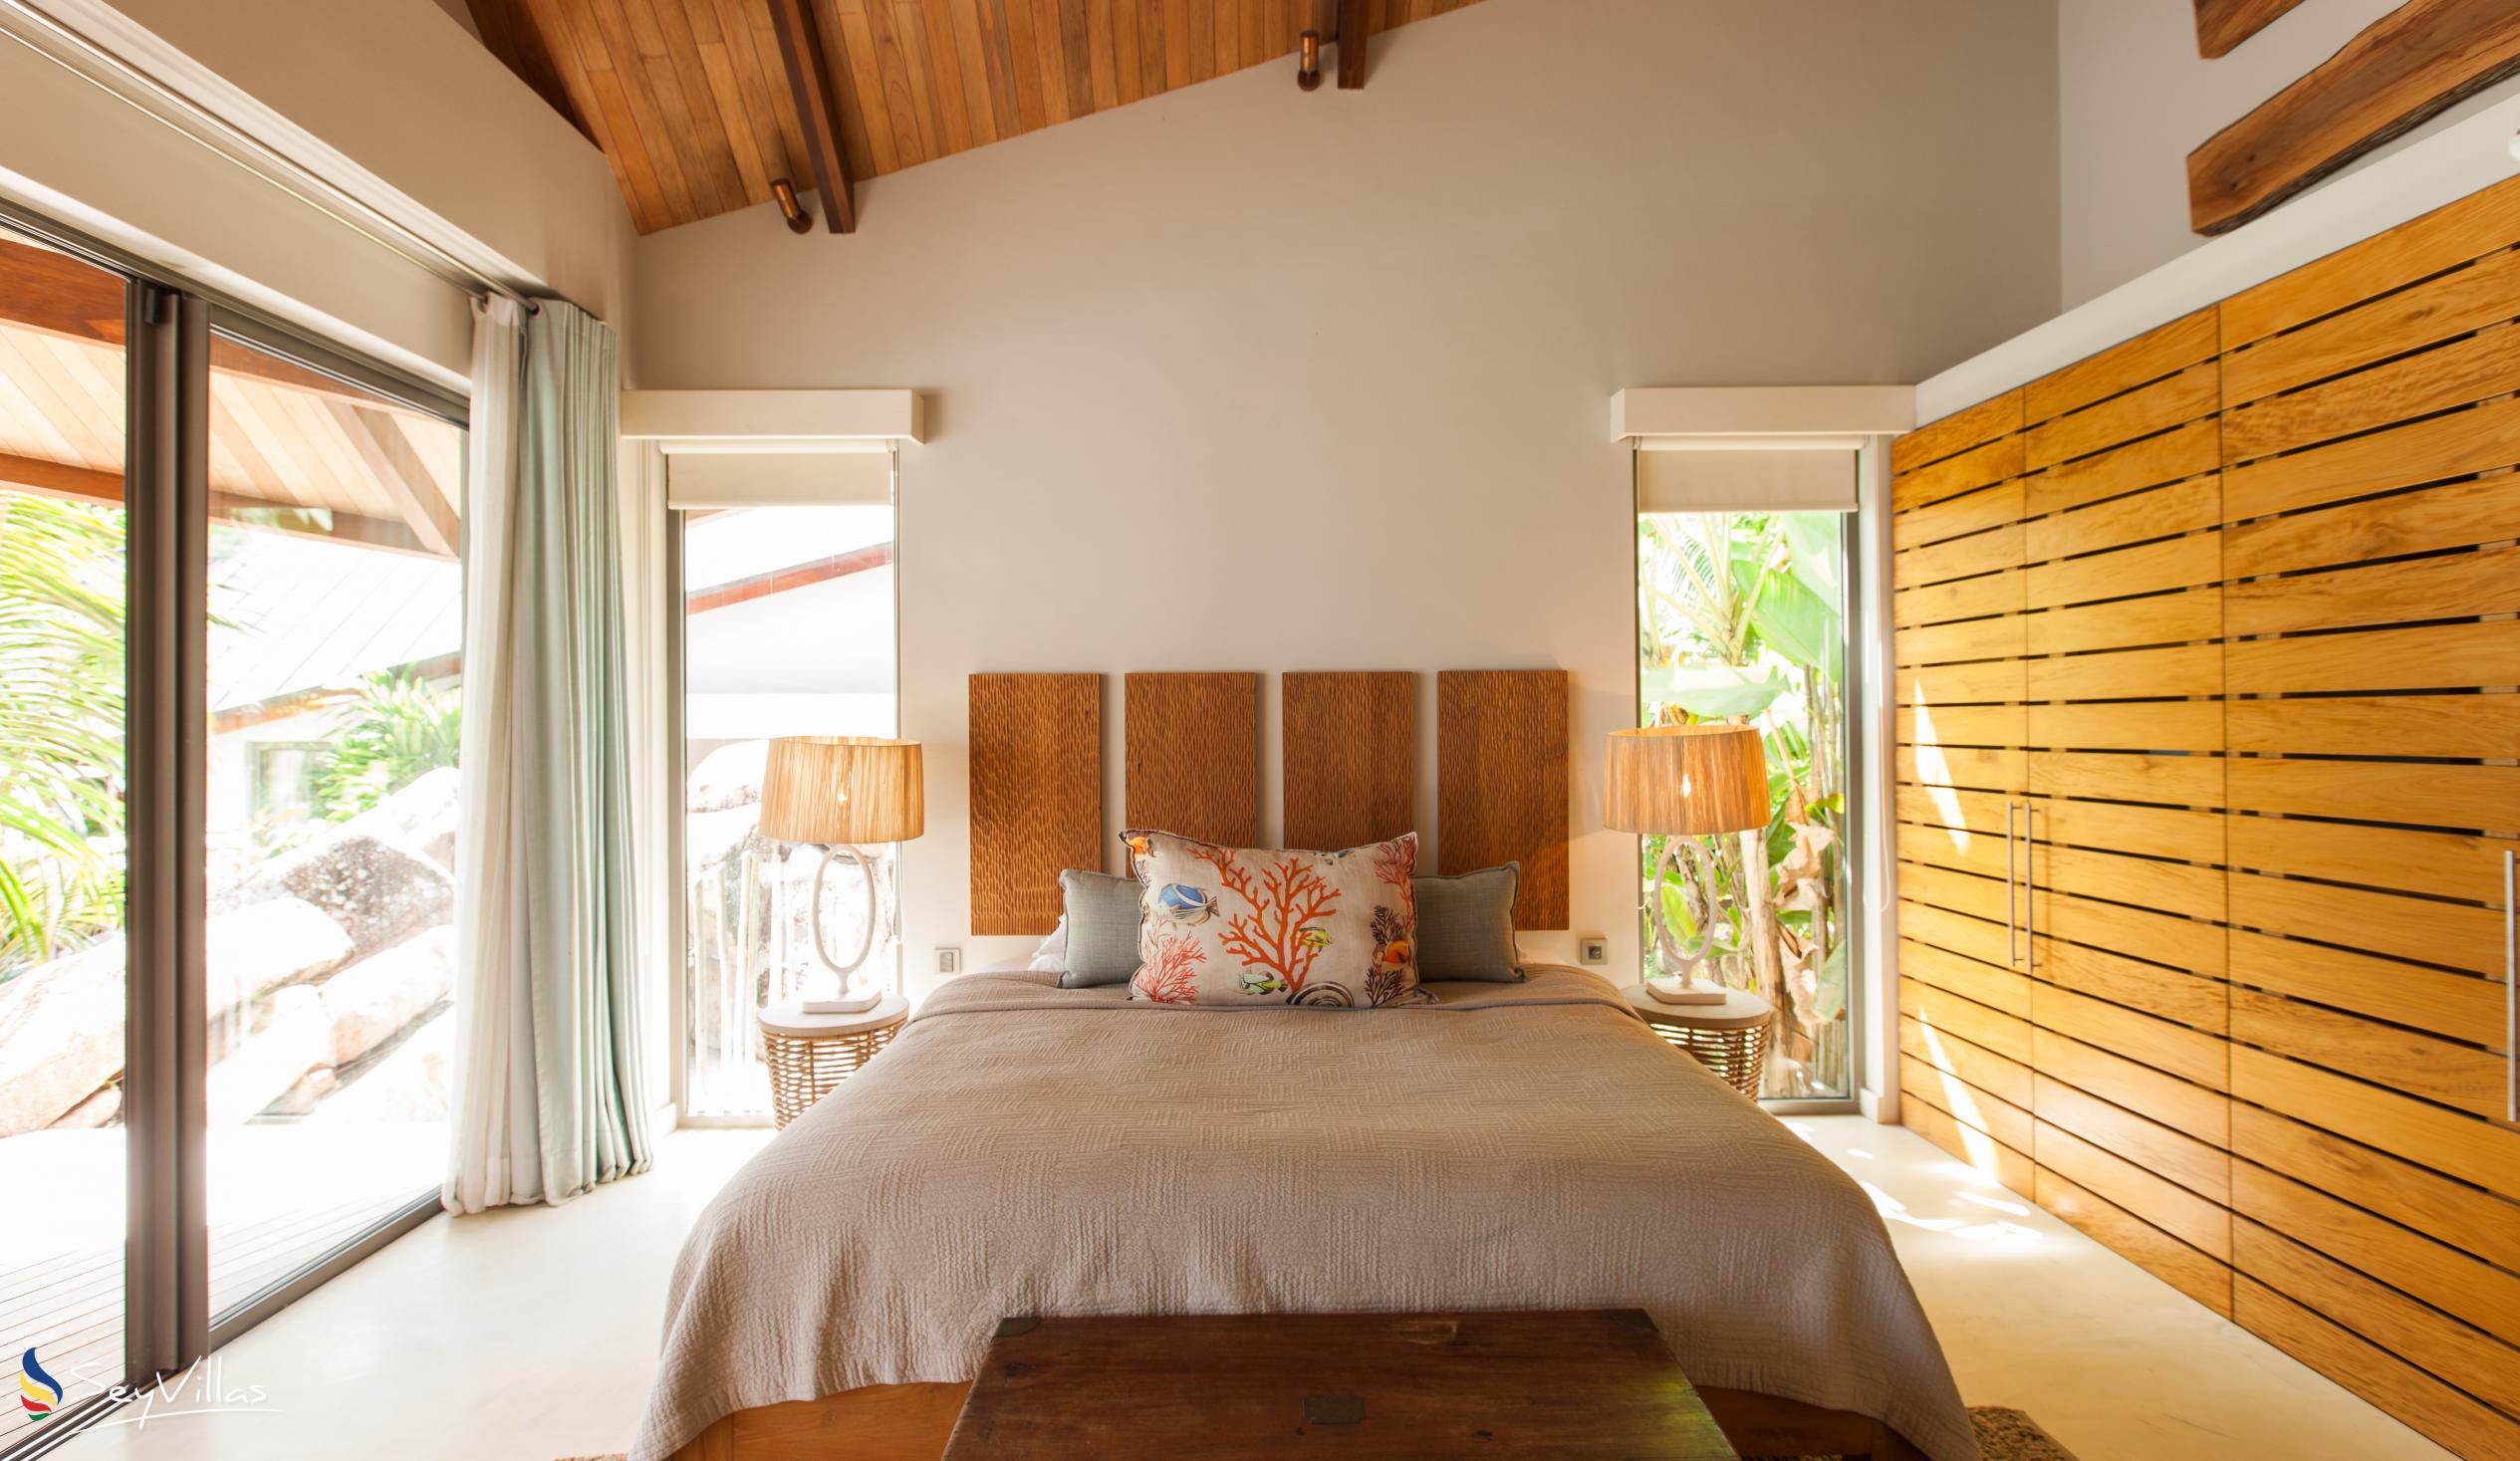 Photo 75: Villa Deckenia - 5-bedroom Villa - Praslin (Seychelles)